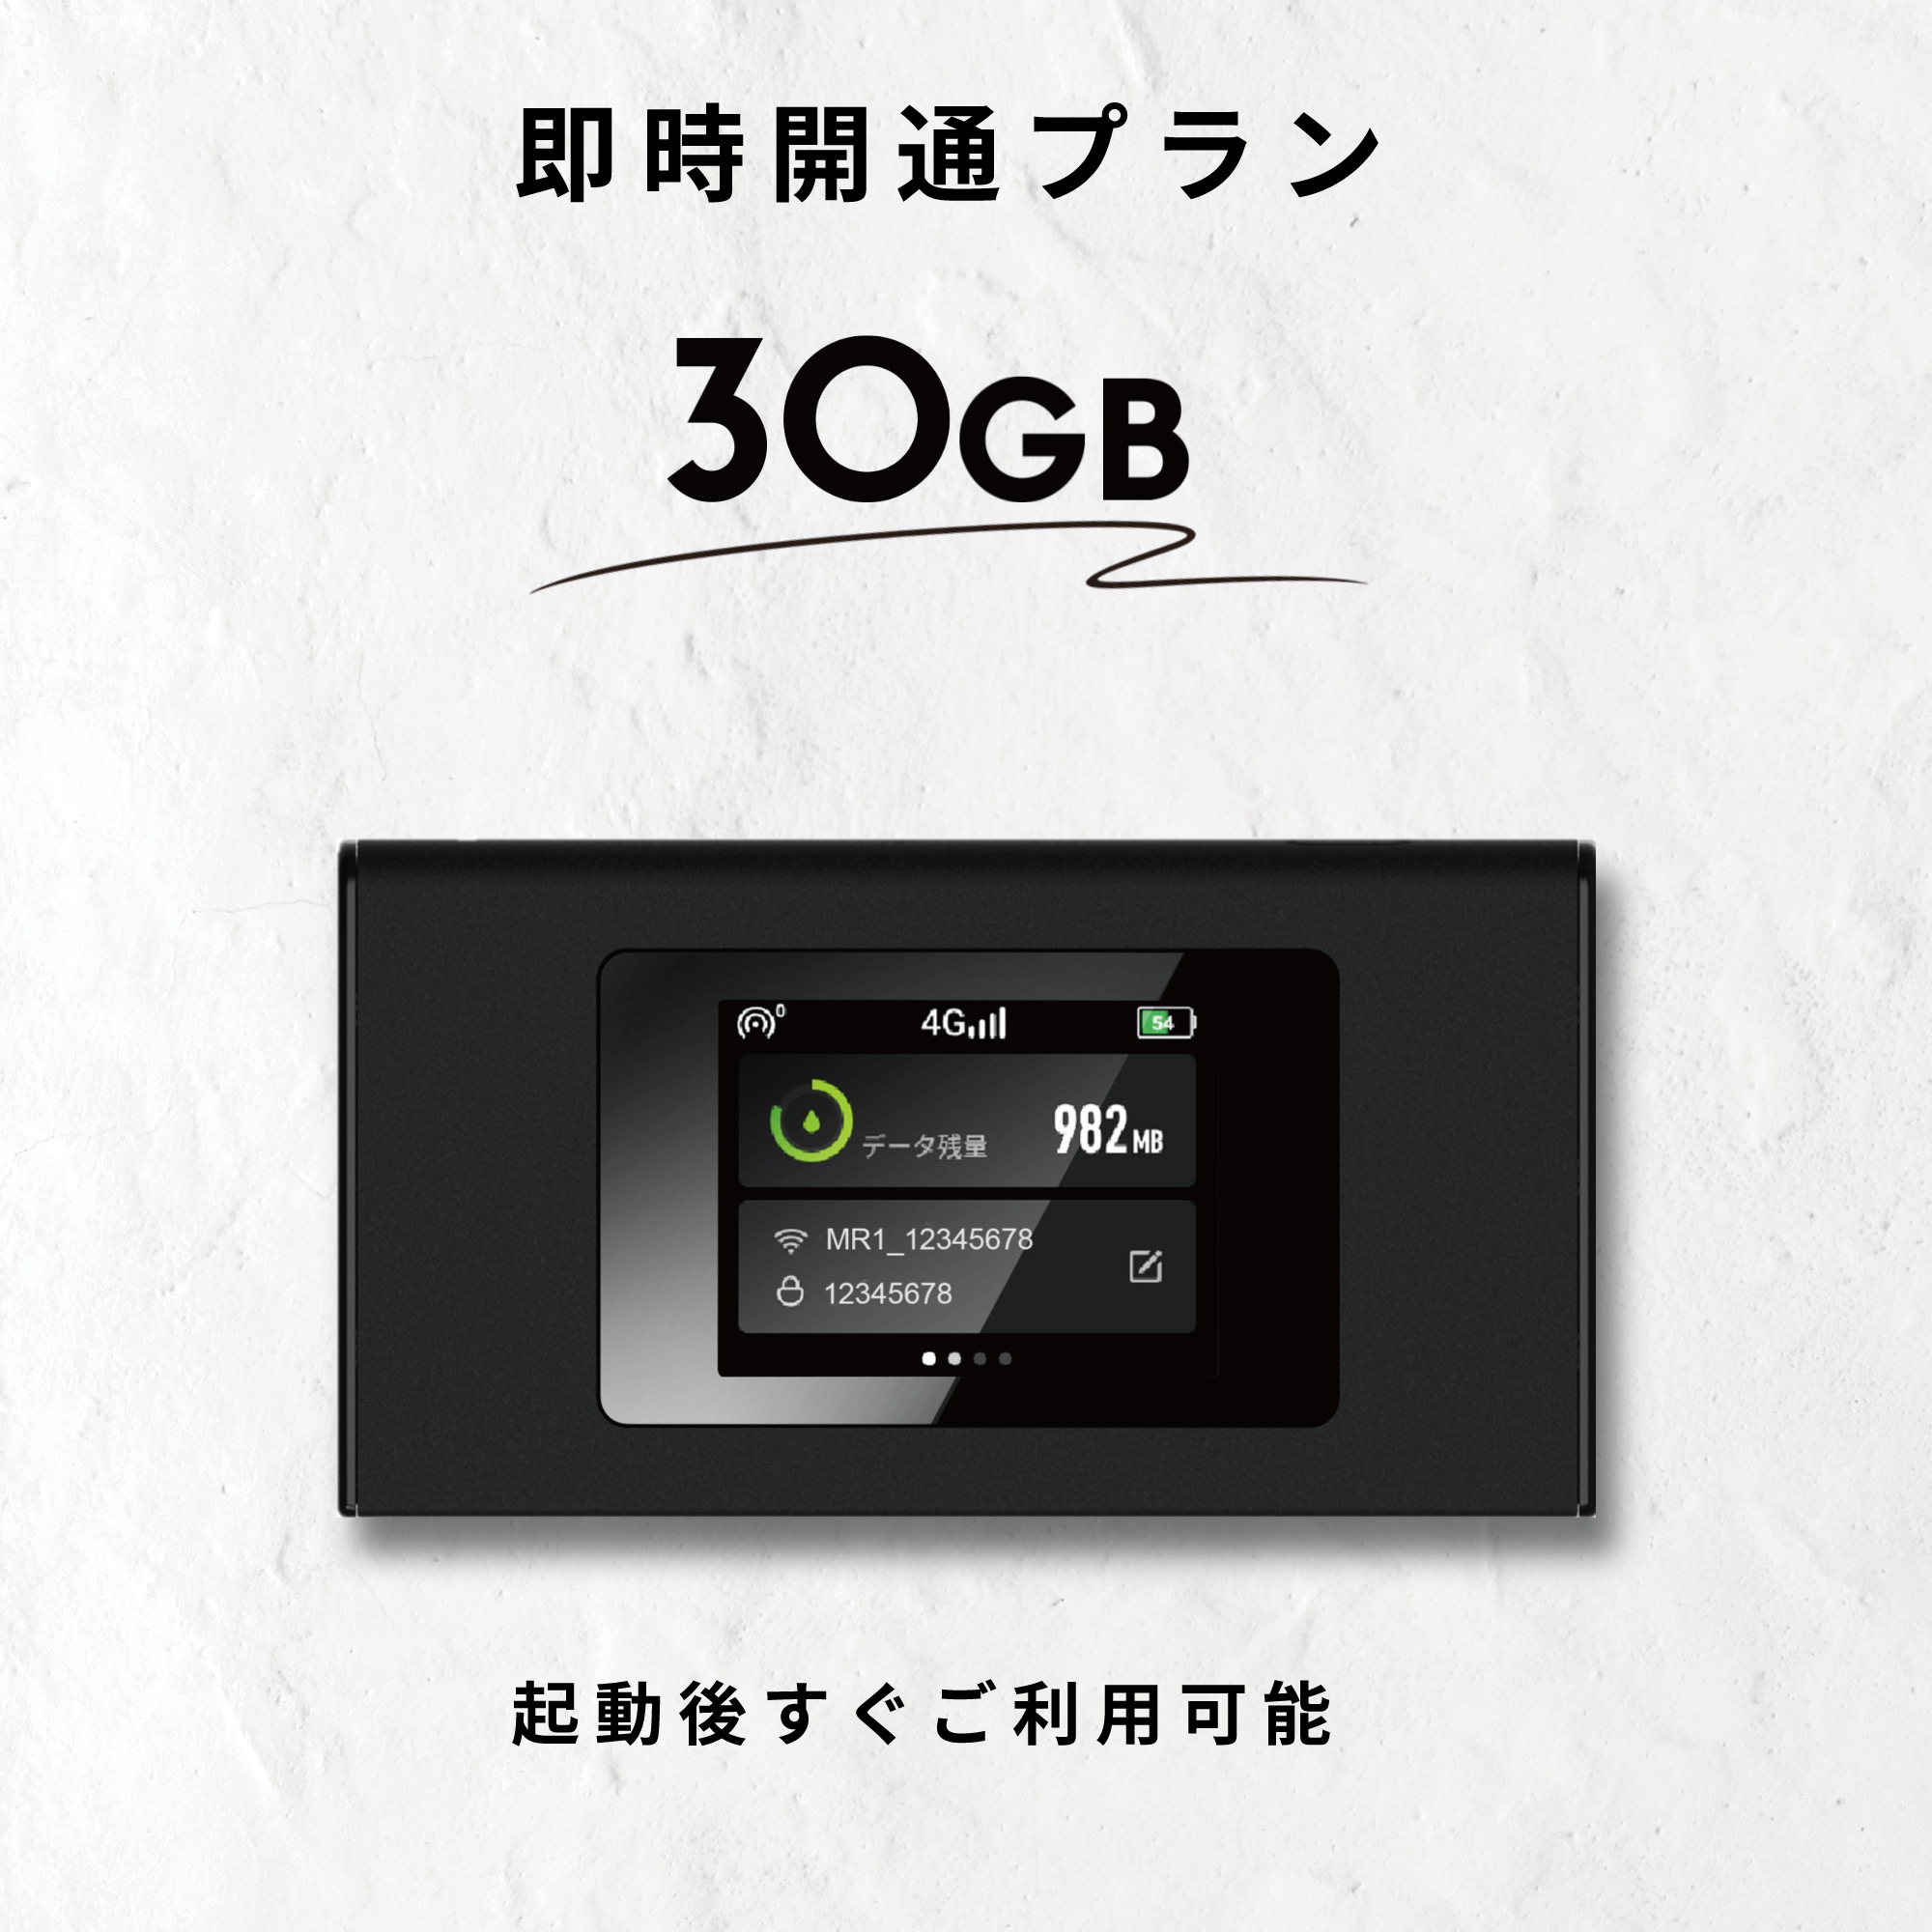 ギガセット【公式】新しいモバイルWiFiルーター 100GB付月額費用なし